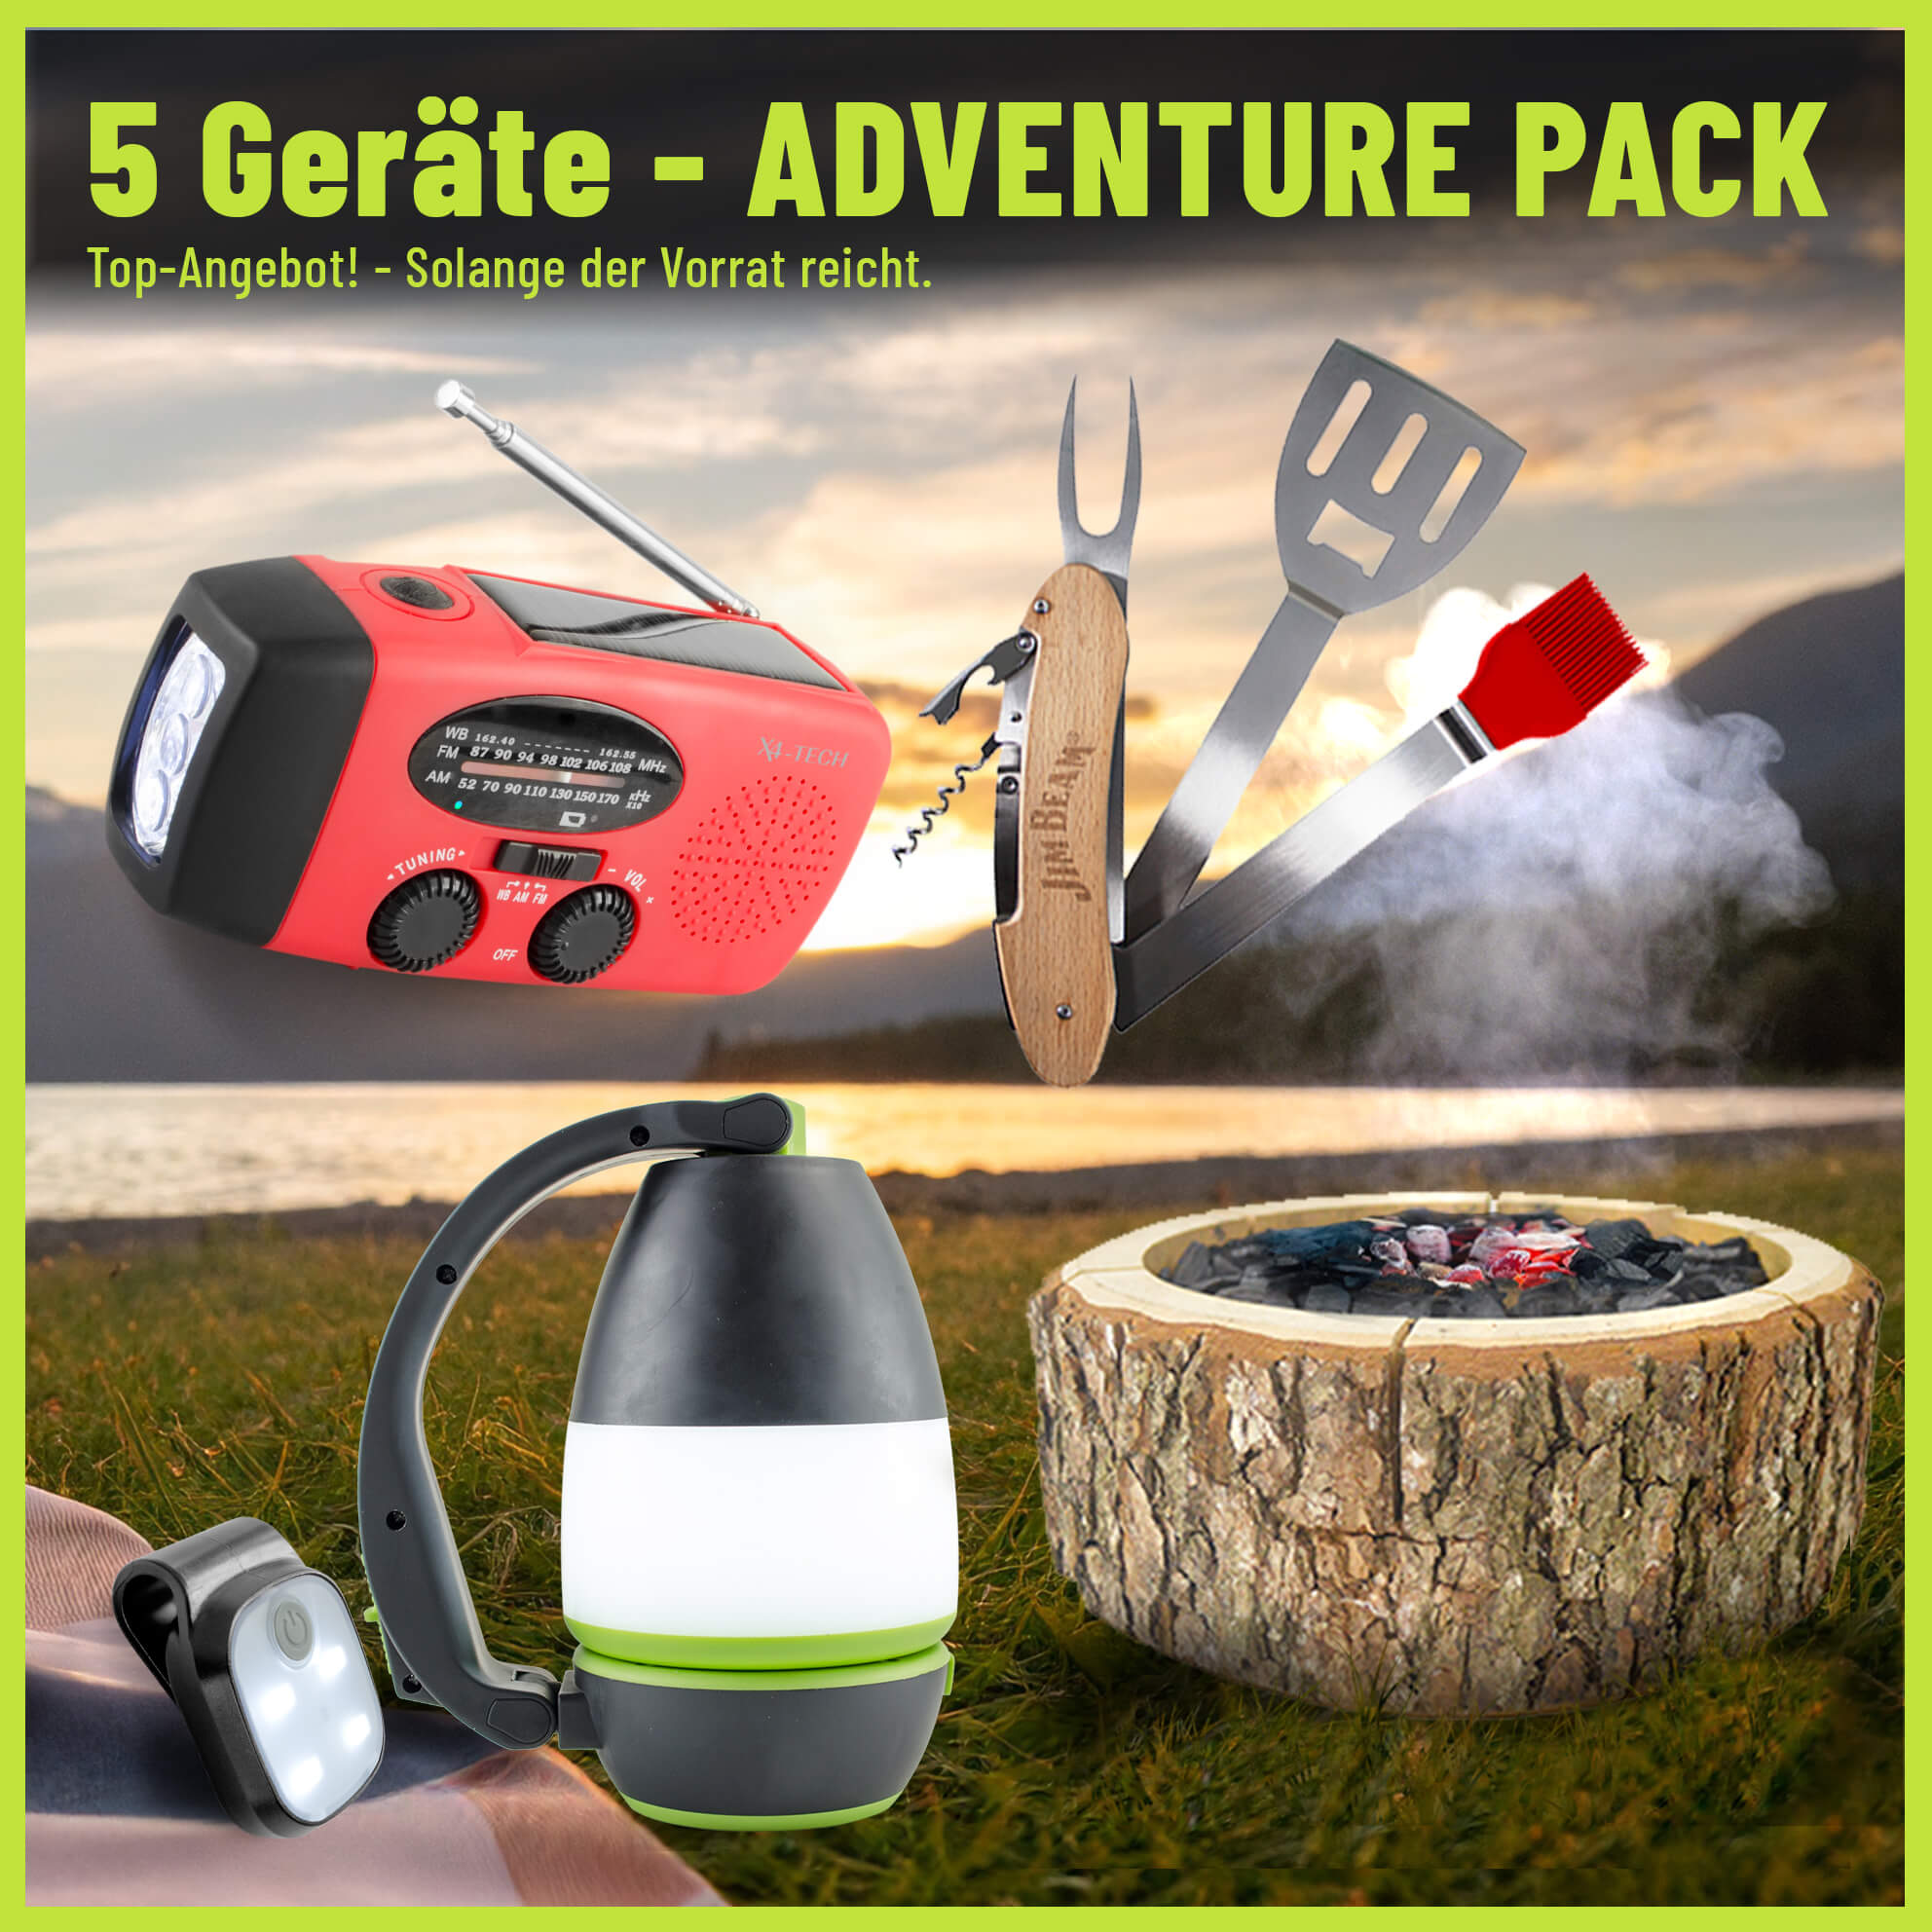 5-Geräte Adventure Pack - Starter-Set für Autoausfahrten ins Grüne